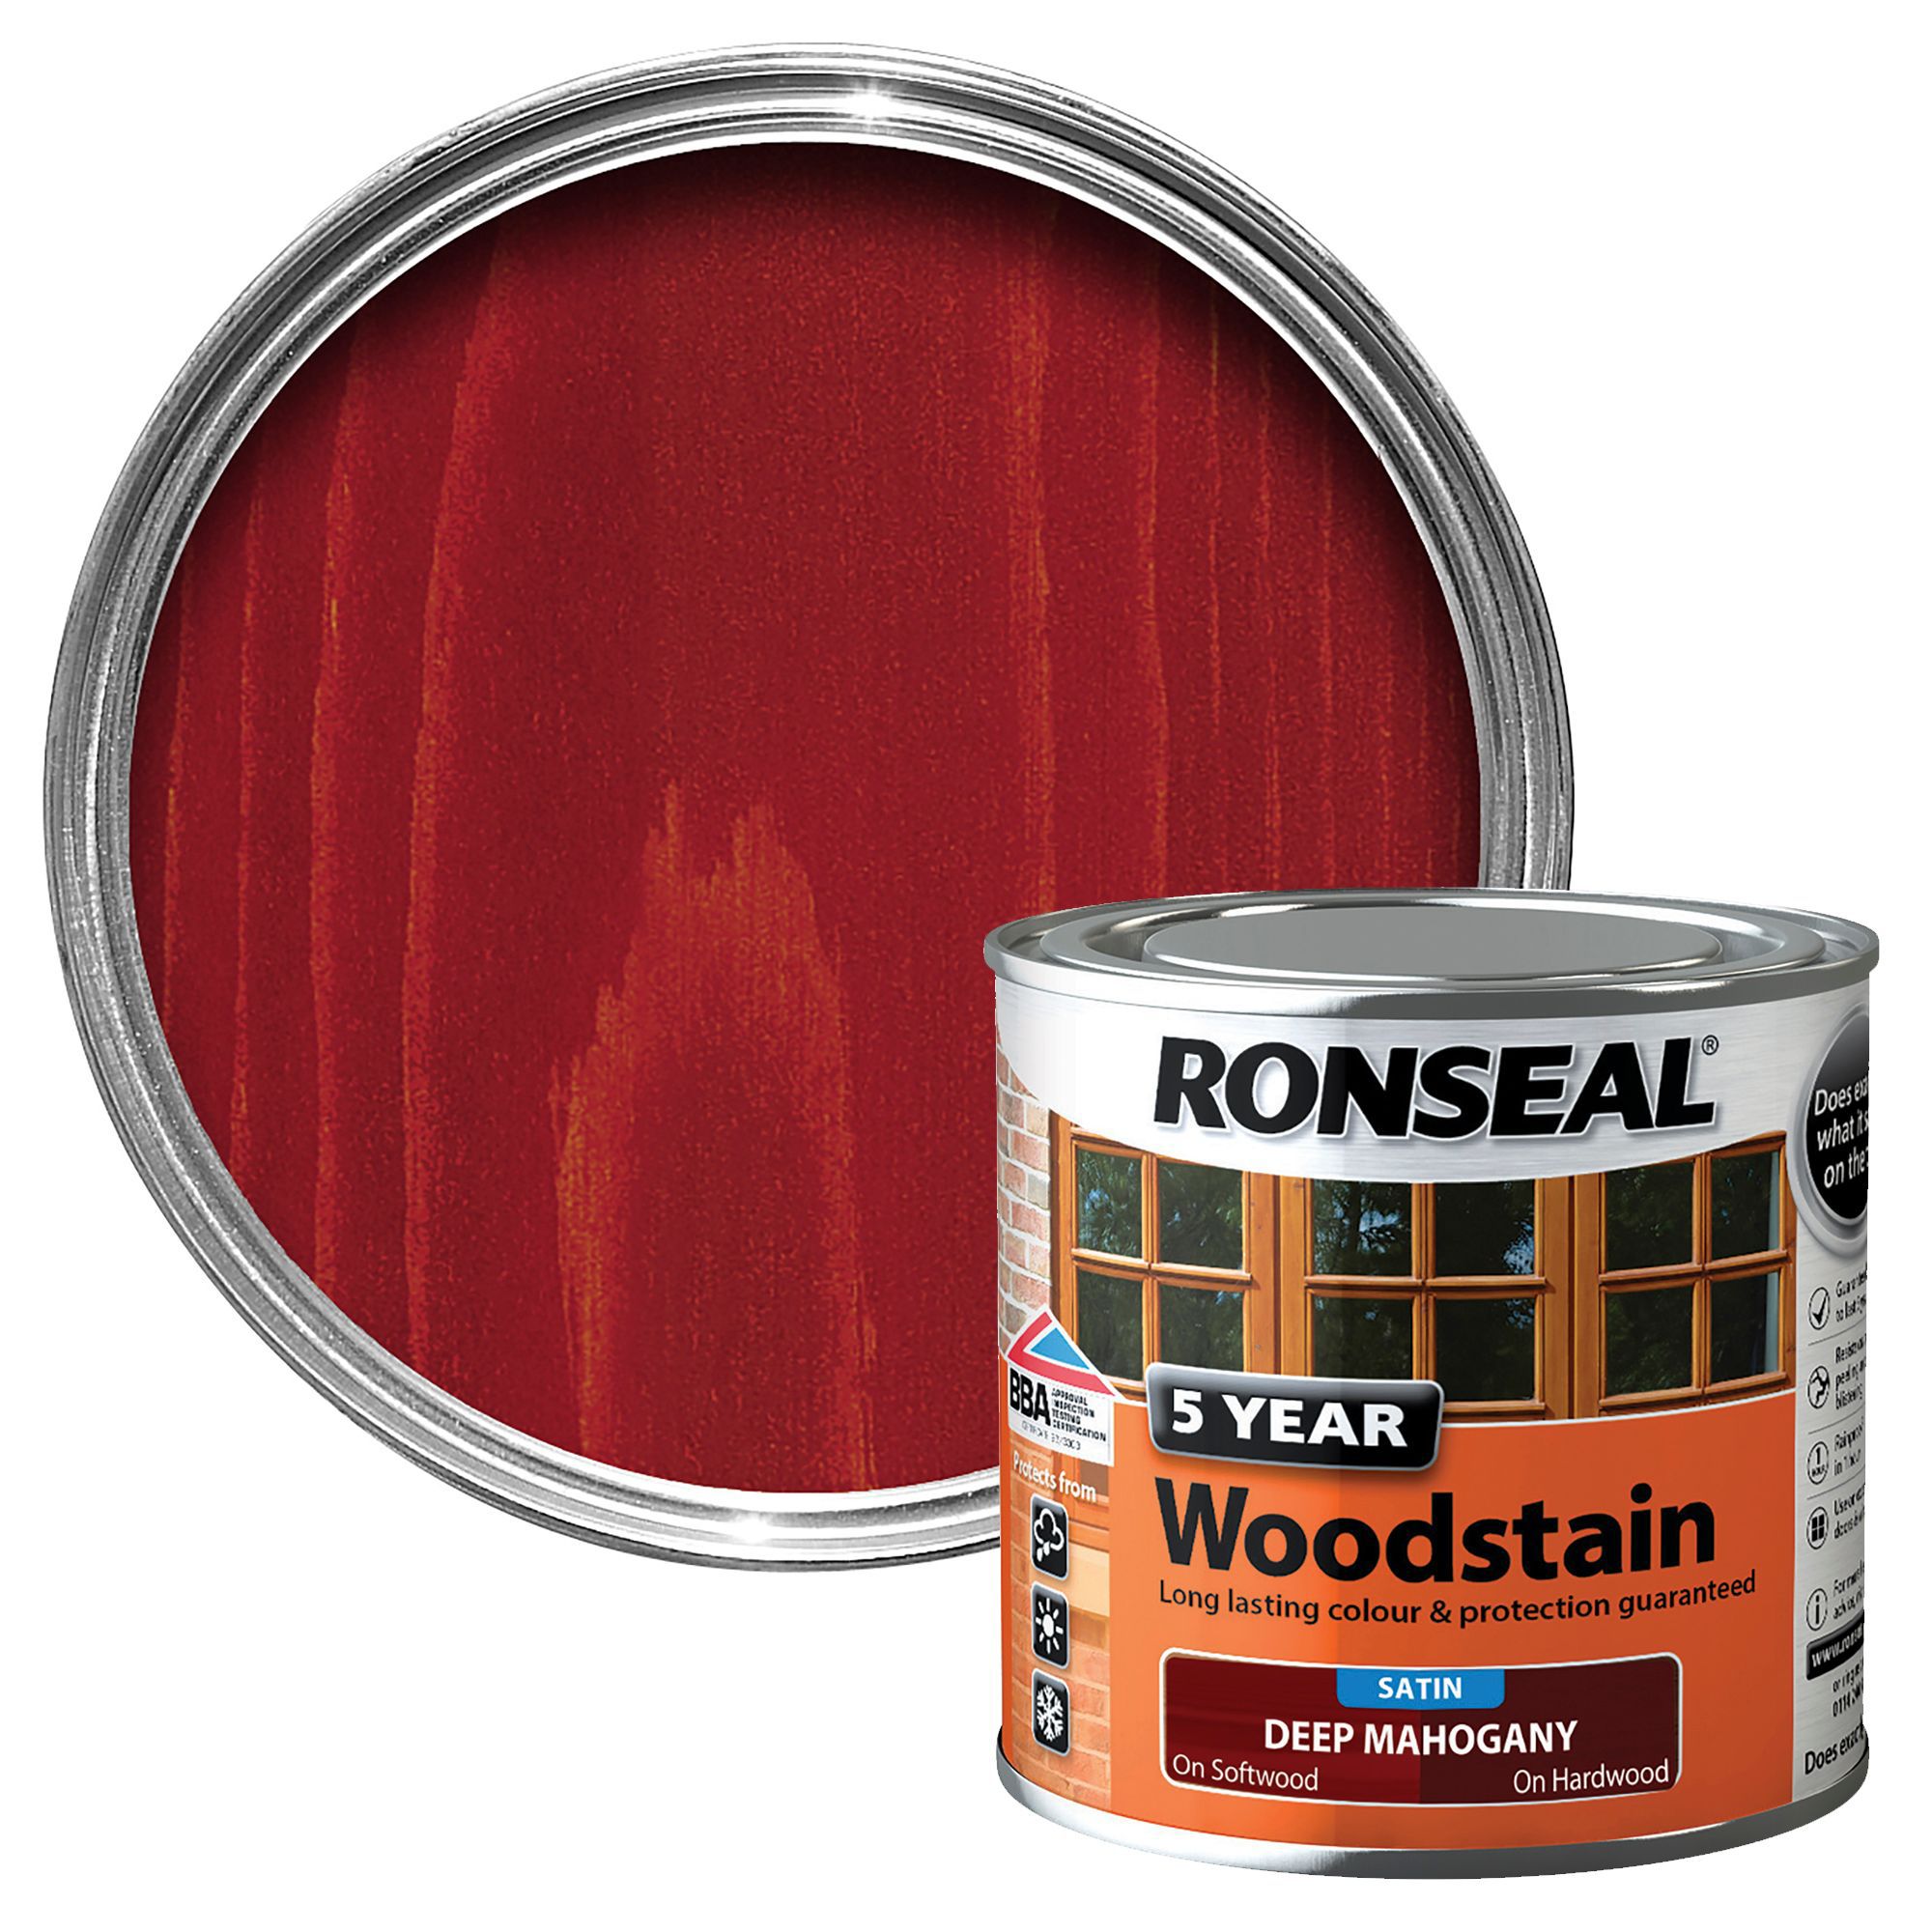 Ronseal Deep mahogany High satin sheen Wood stain, 250